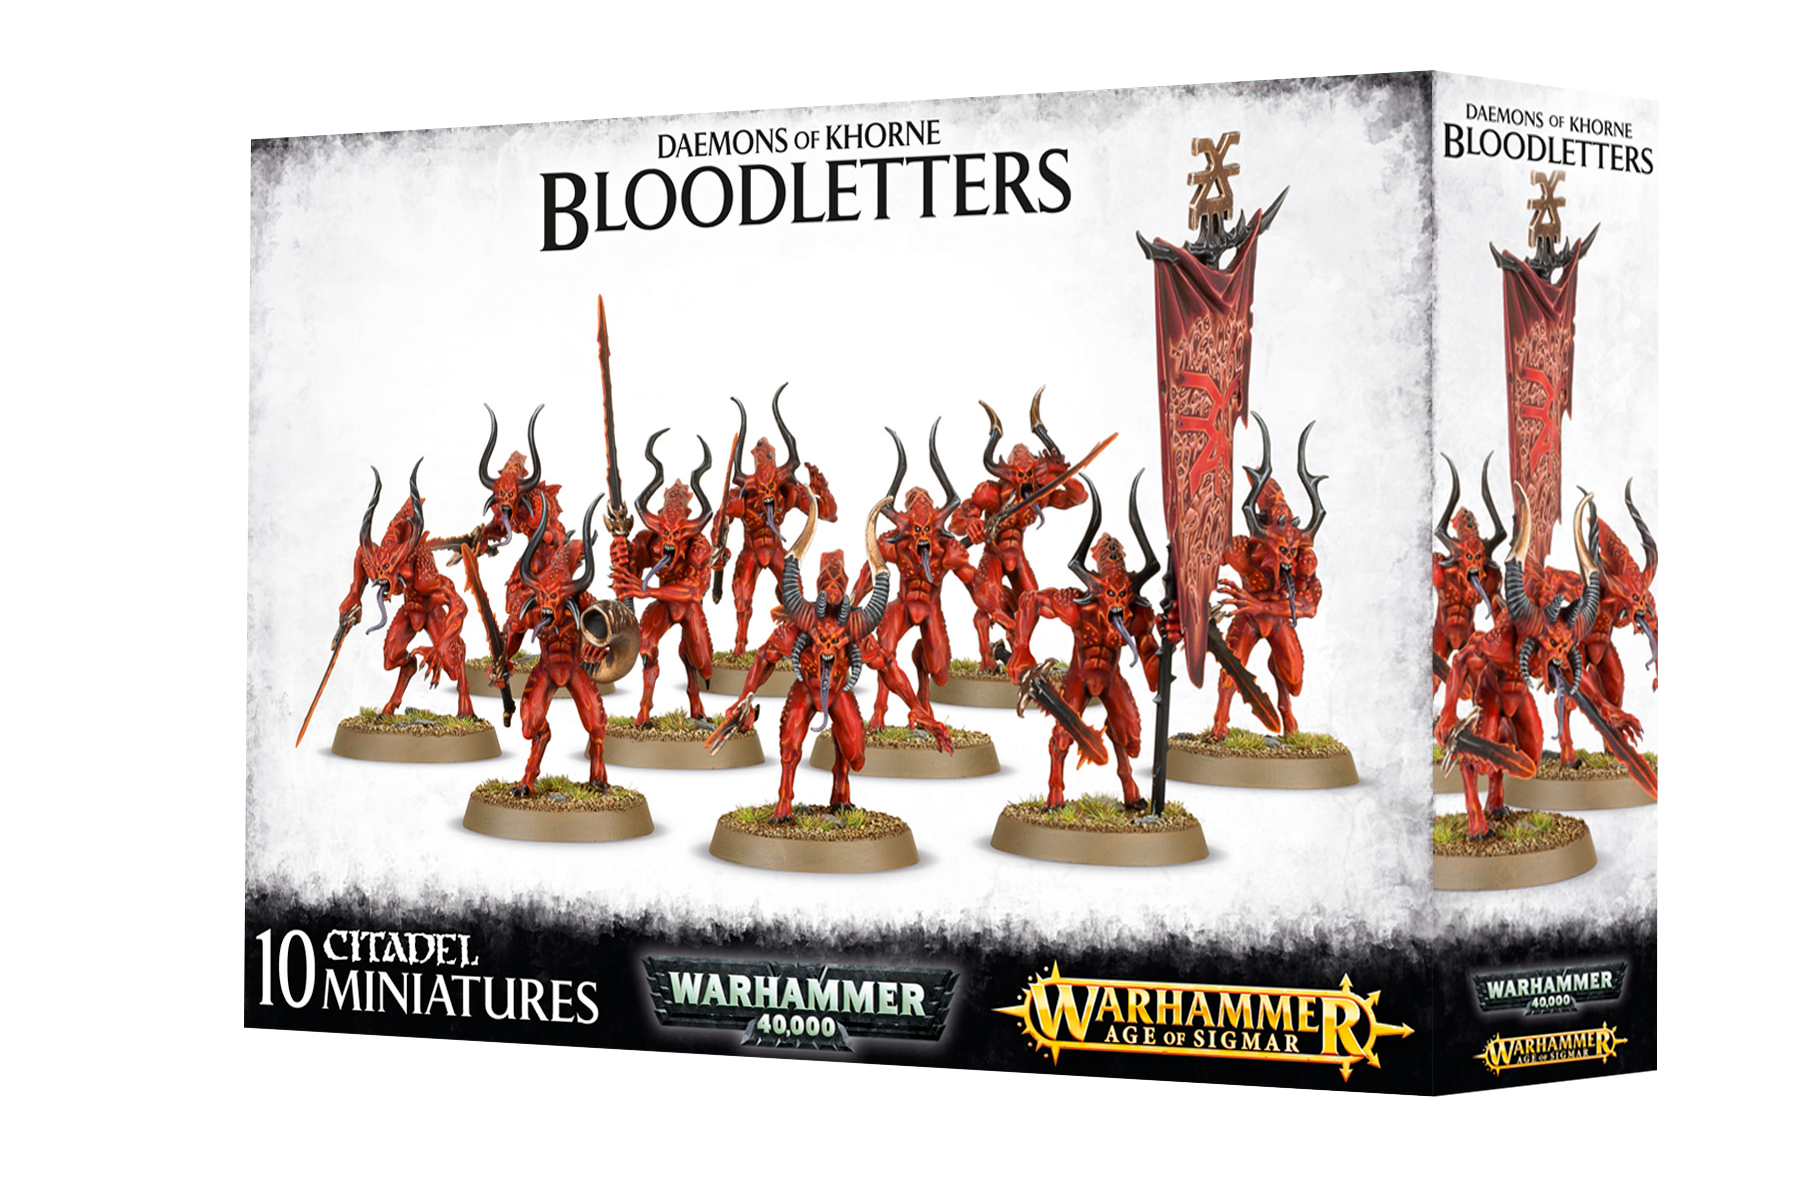 Warhammer 40k: Daemons of Khorne Bloodletters - Bards & Cards